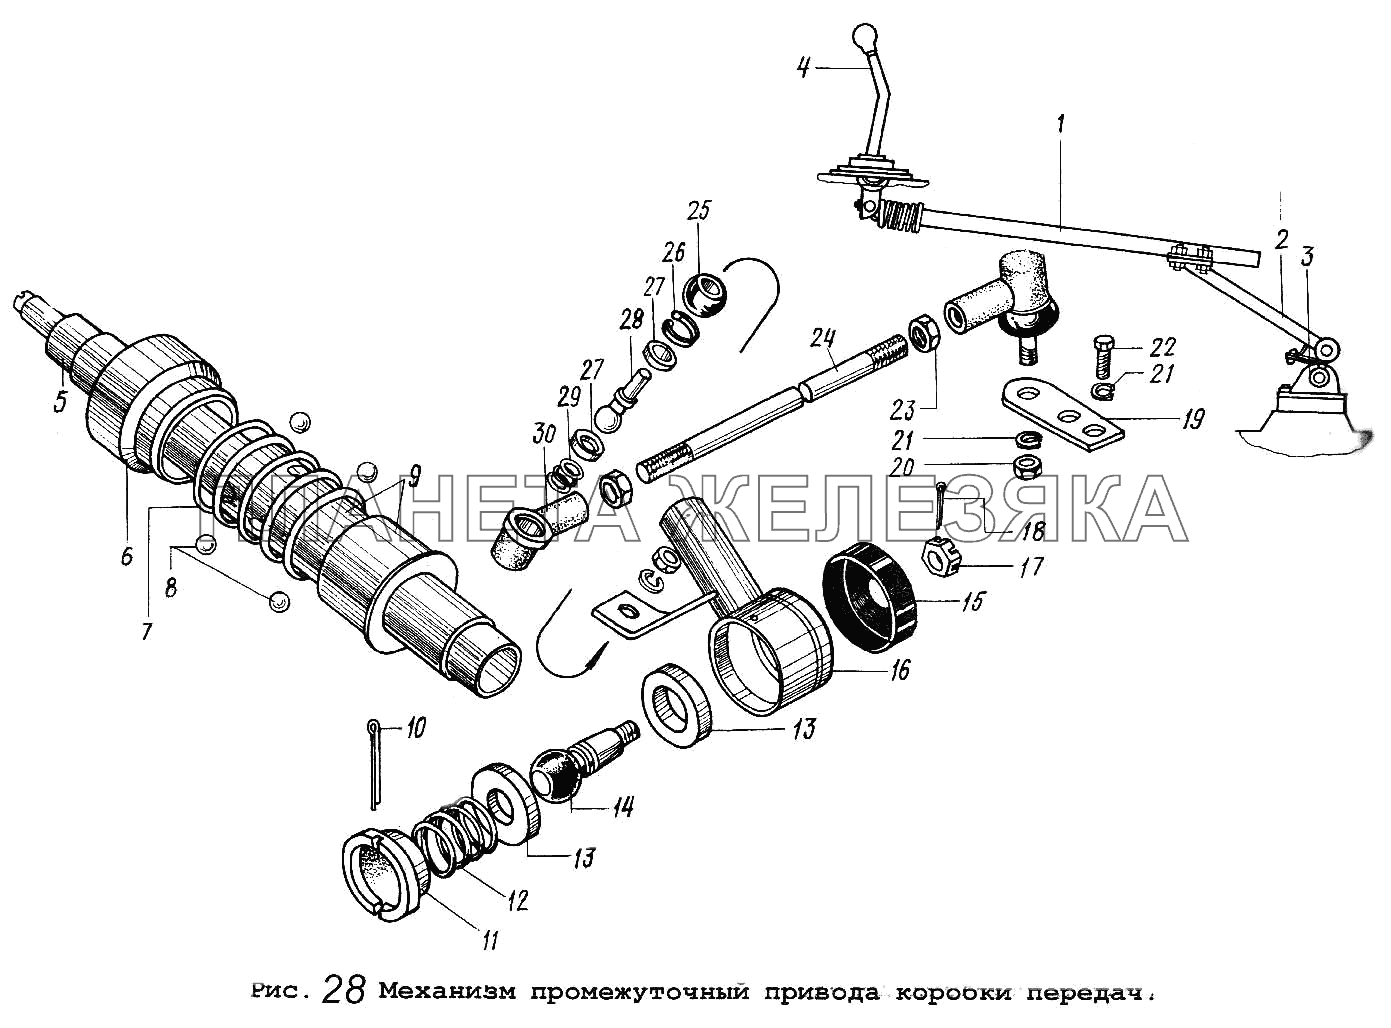 Механизм промежуточный привода коробки передач МАЗ-5516